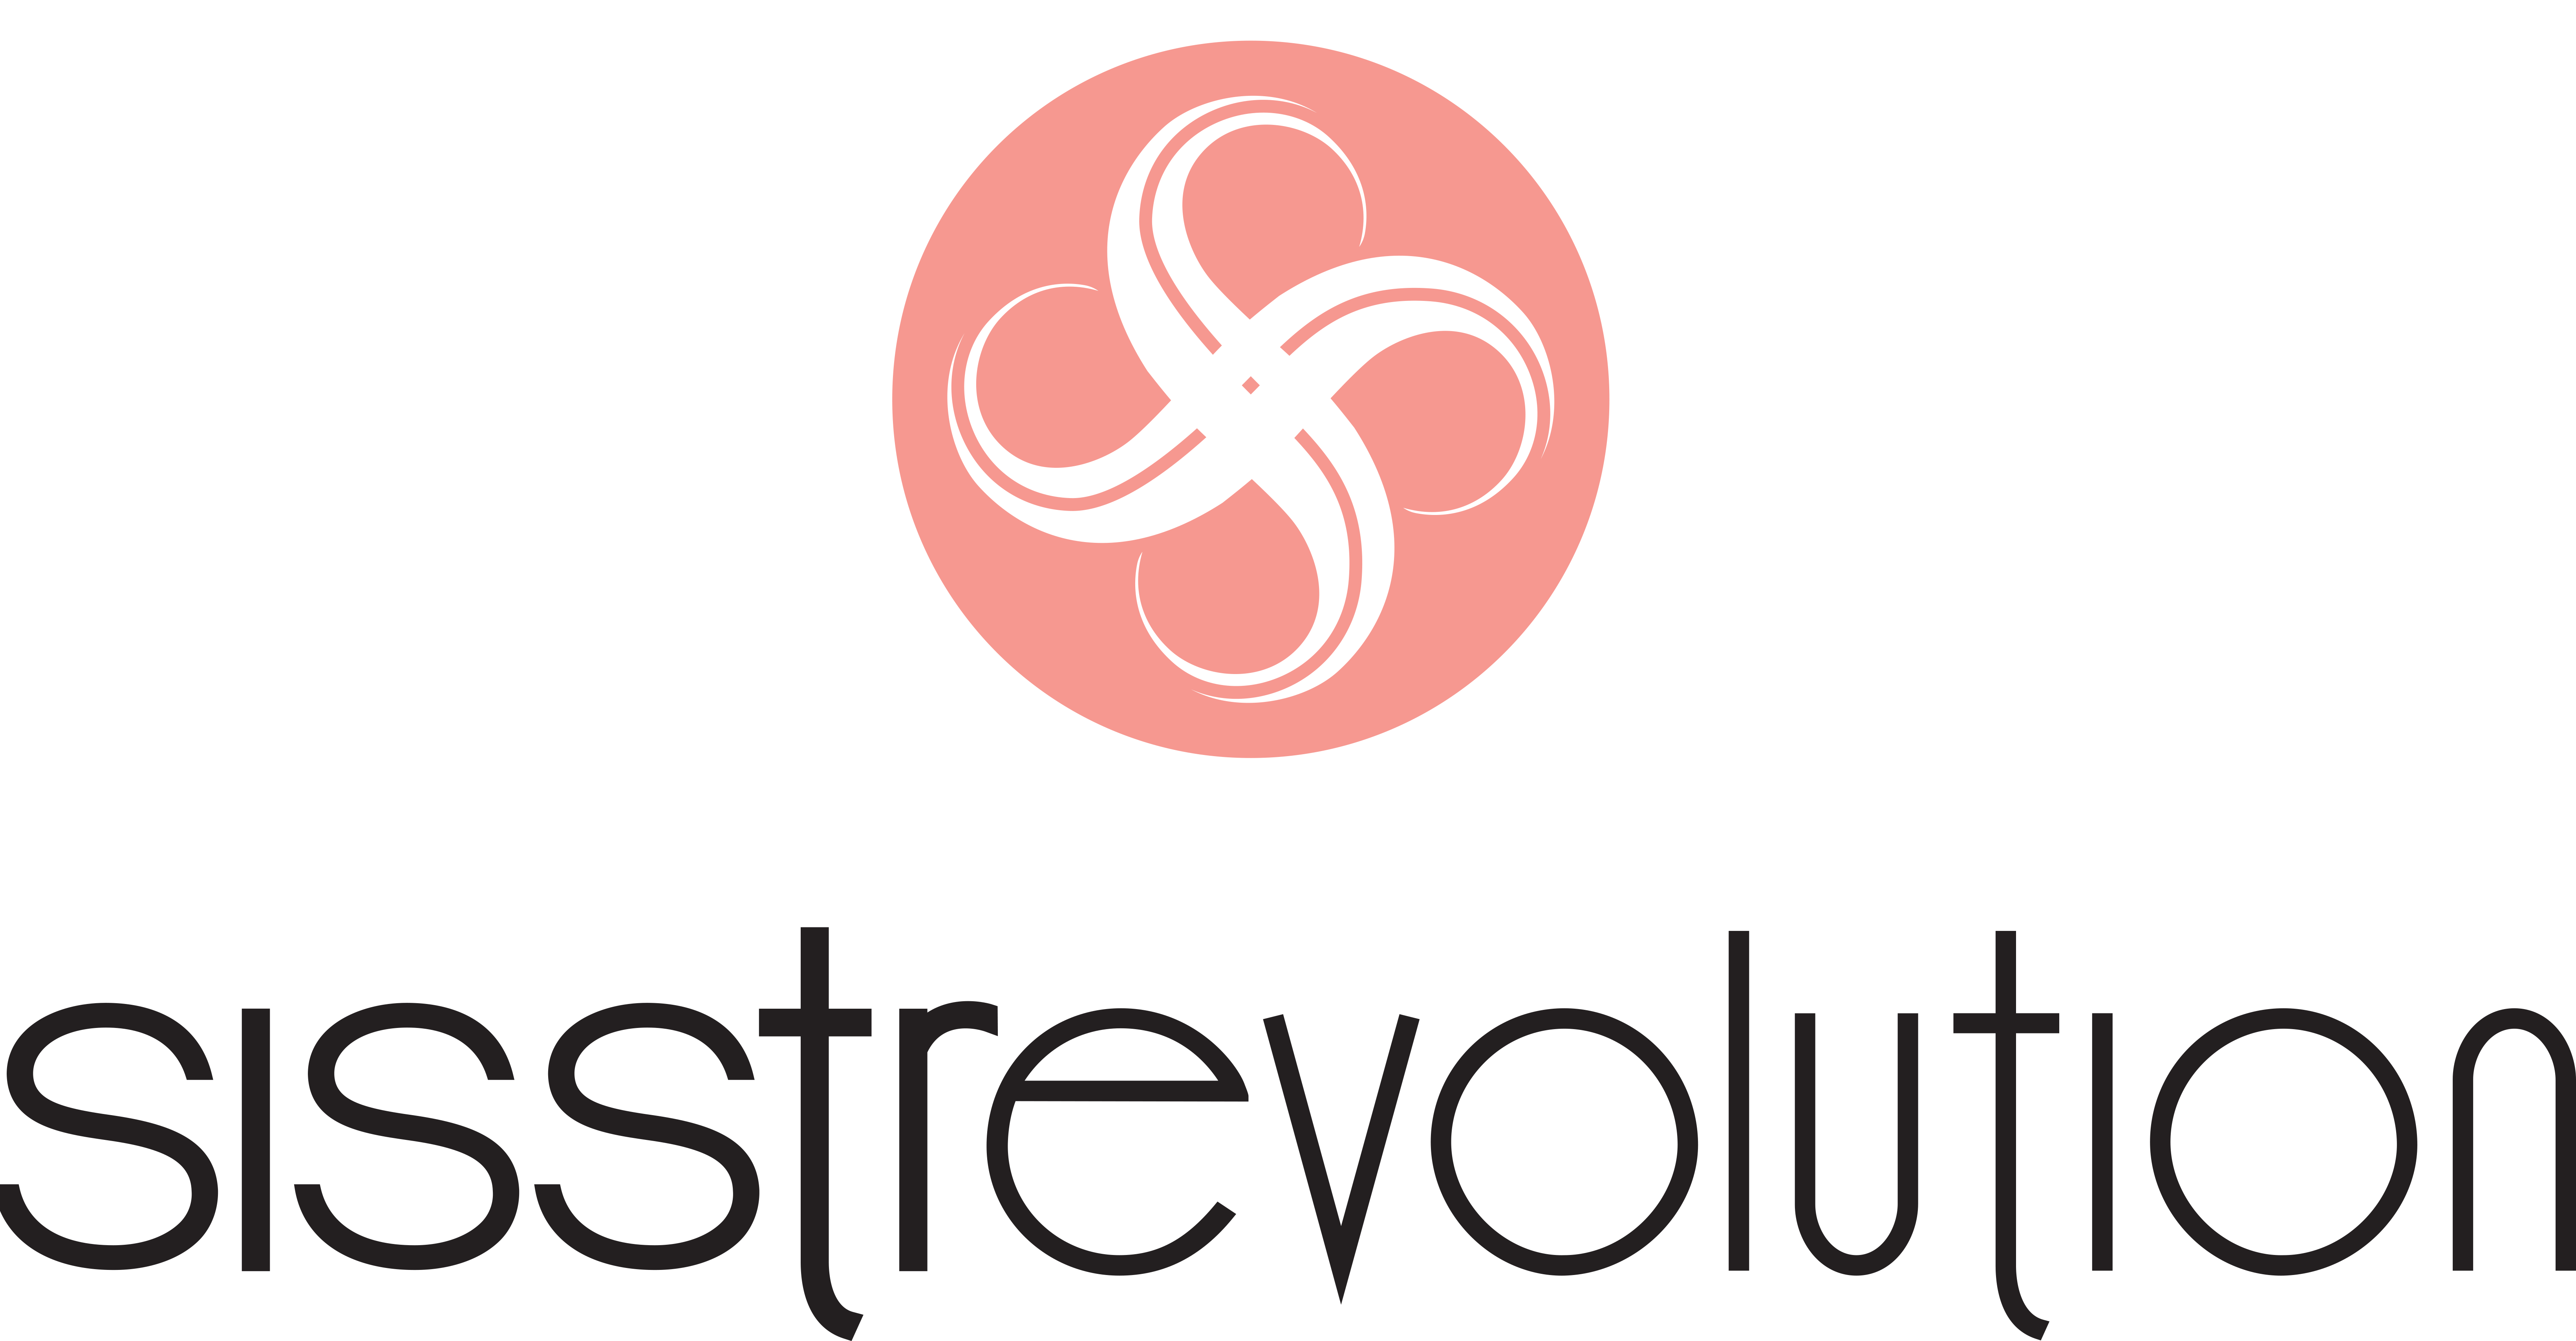 SISSTREVOLUTION logo